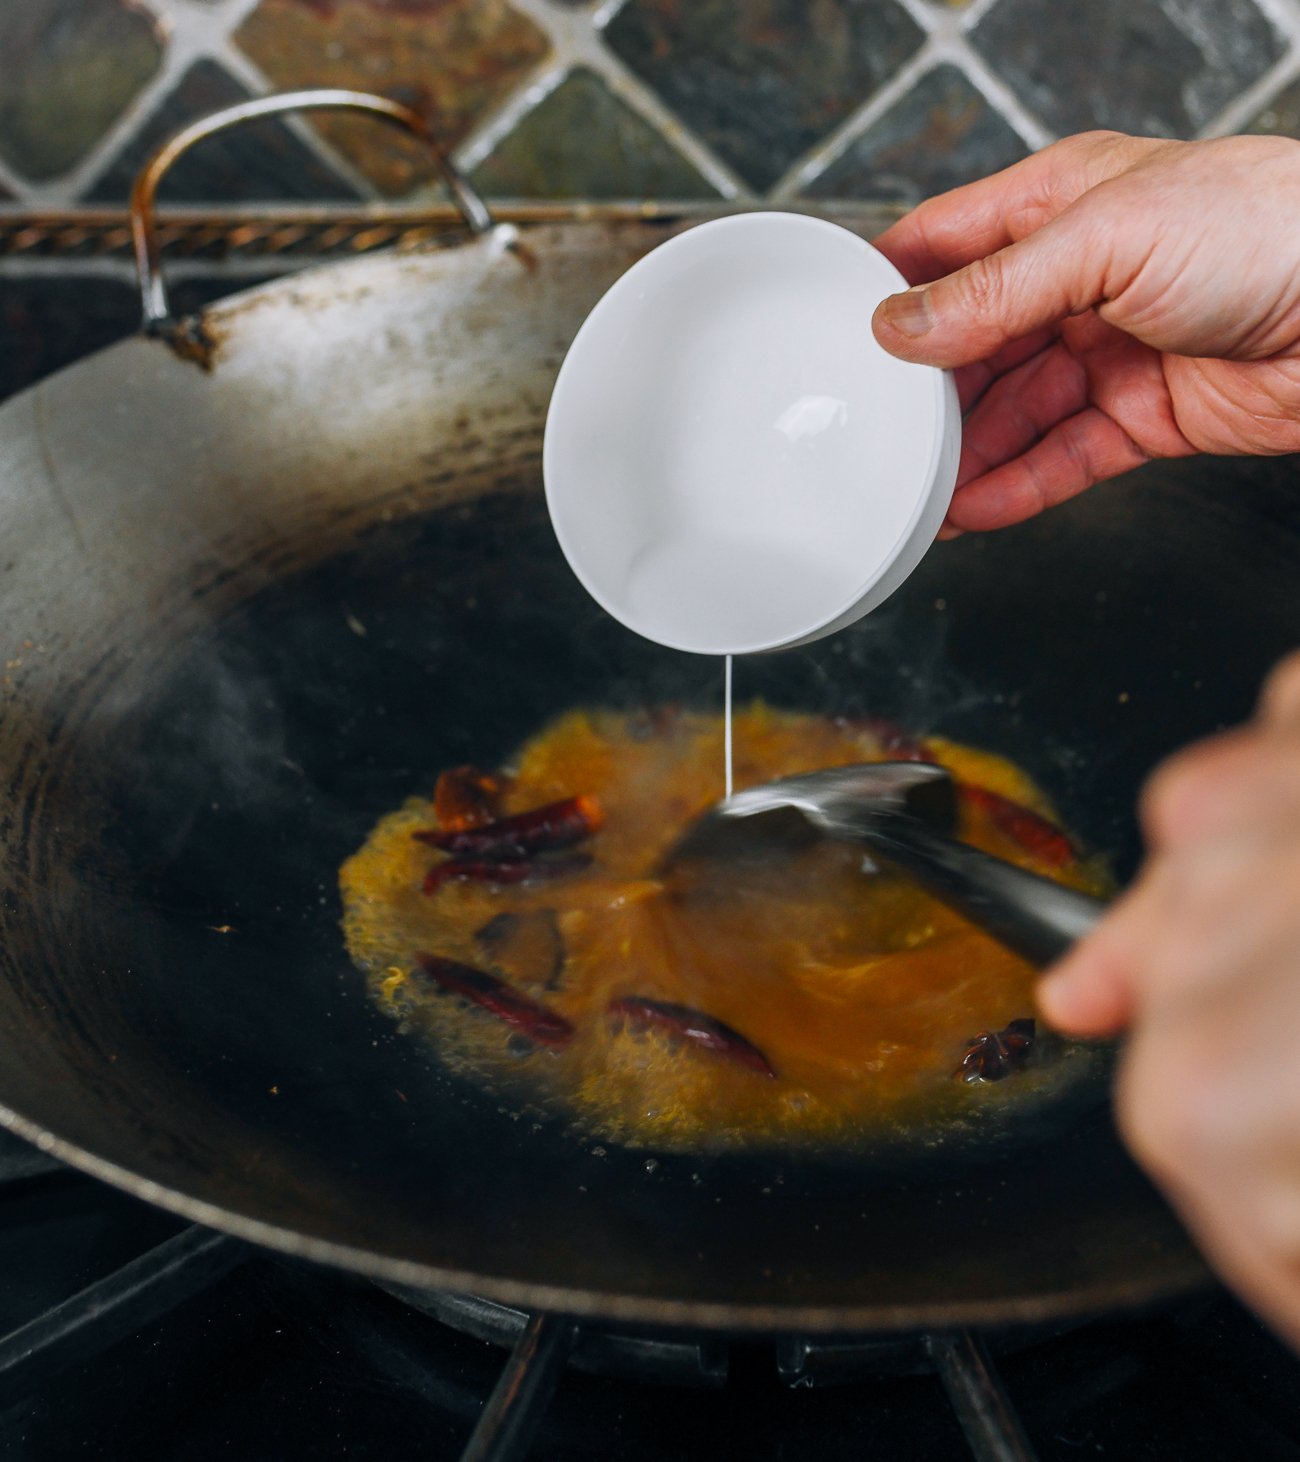 agregar lechada de maicena a la salsa en el wok